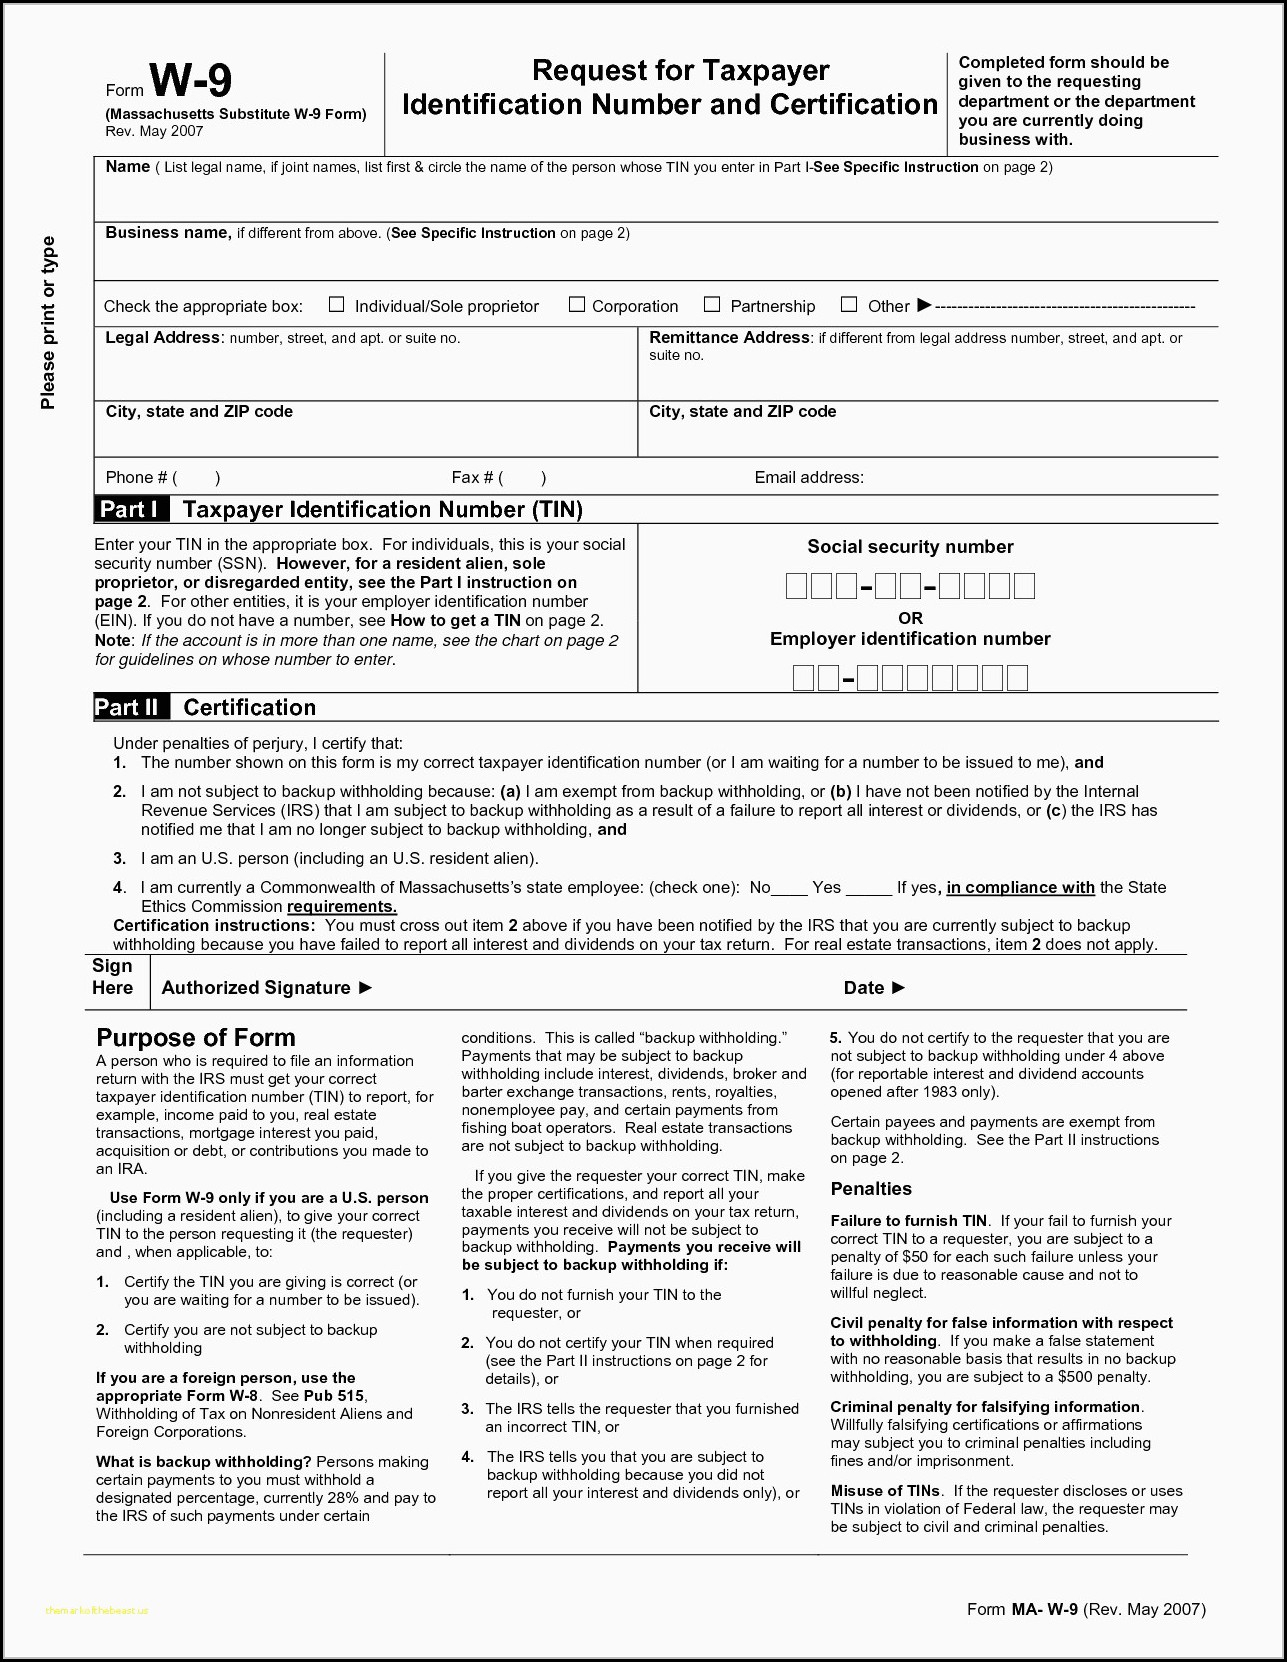 Wisconsin W9 Form - Printable W-9 Form 2019